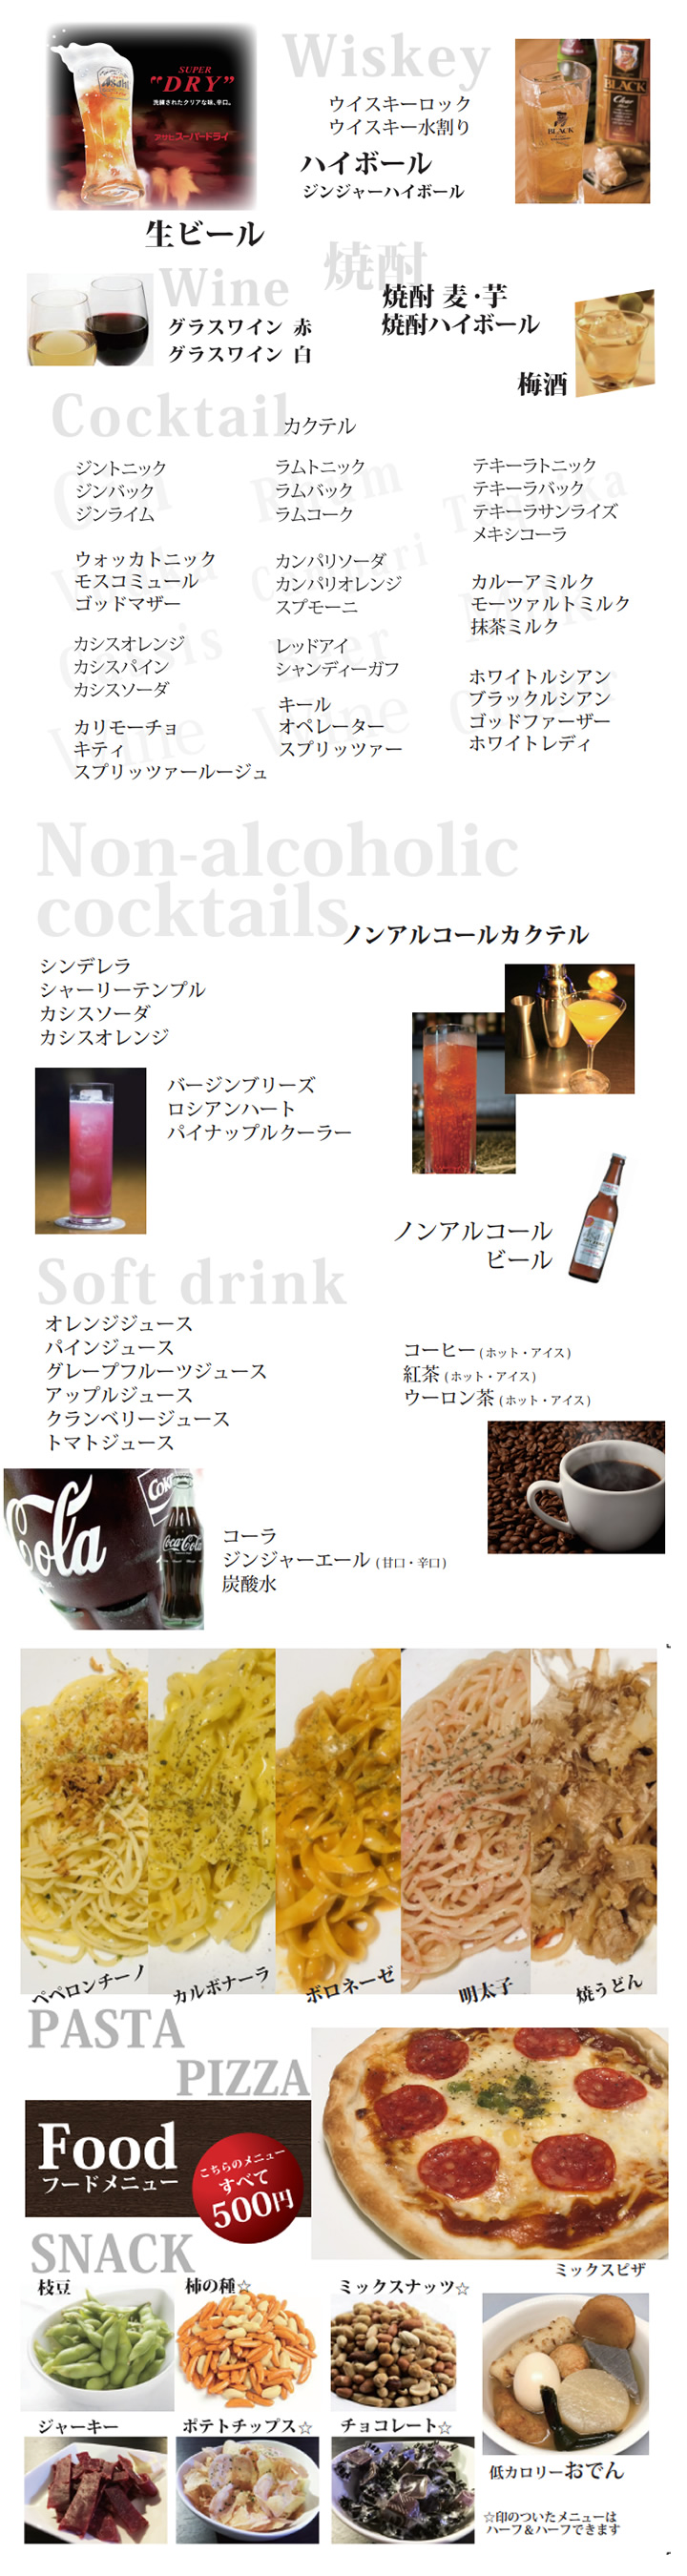 ライブバー 名古屋 栄 sakaeBase | Cafe＆Bar SakaeBase（栄ベース）名古屋のライブバー